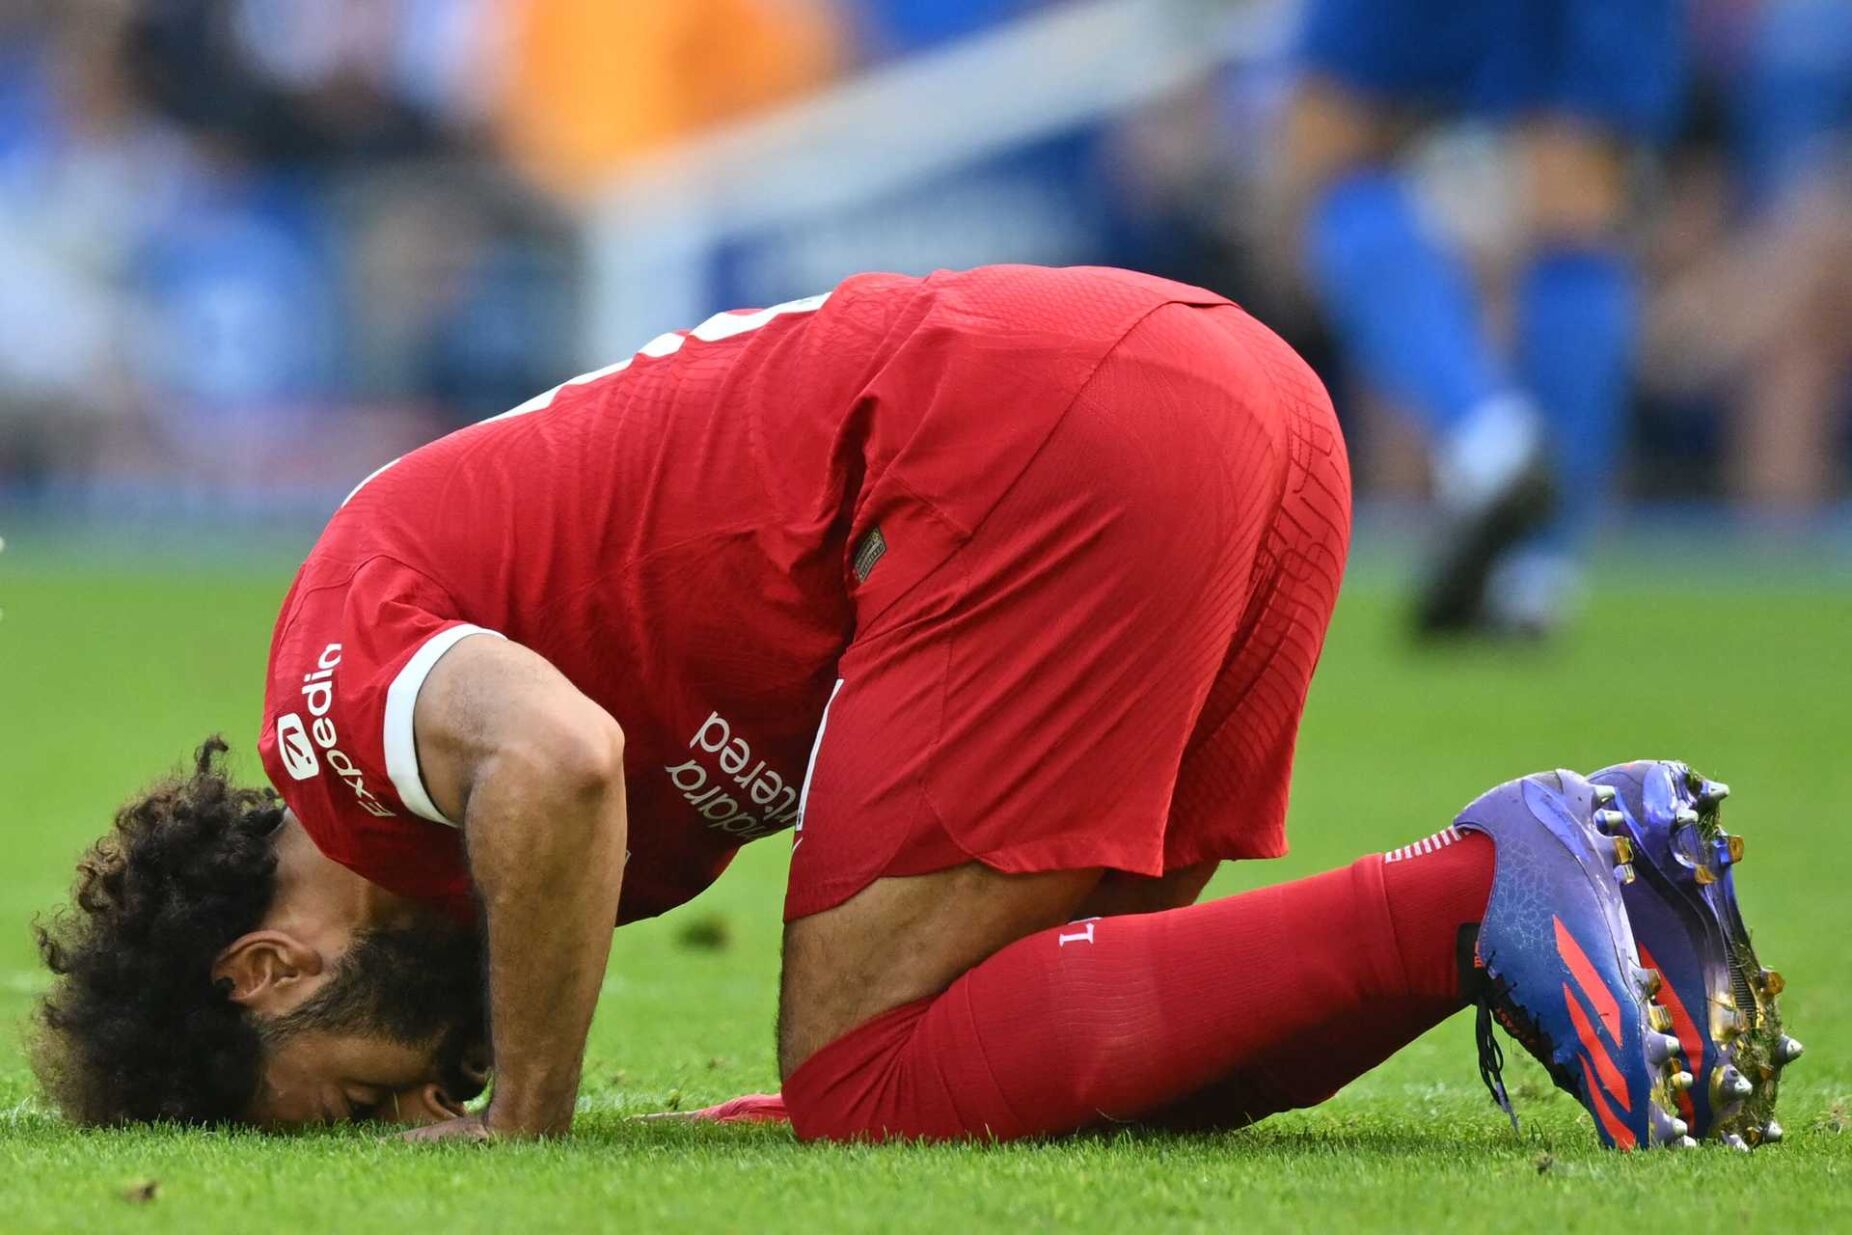 Jogador Salah pede fim do massacre contra 'famílias destroçadas